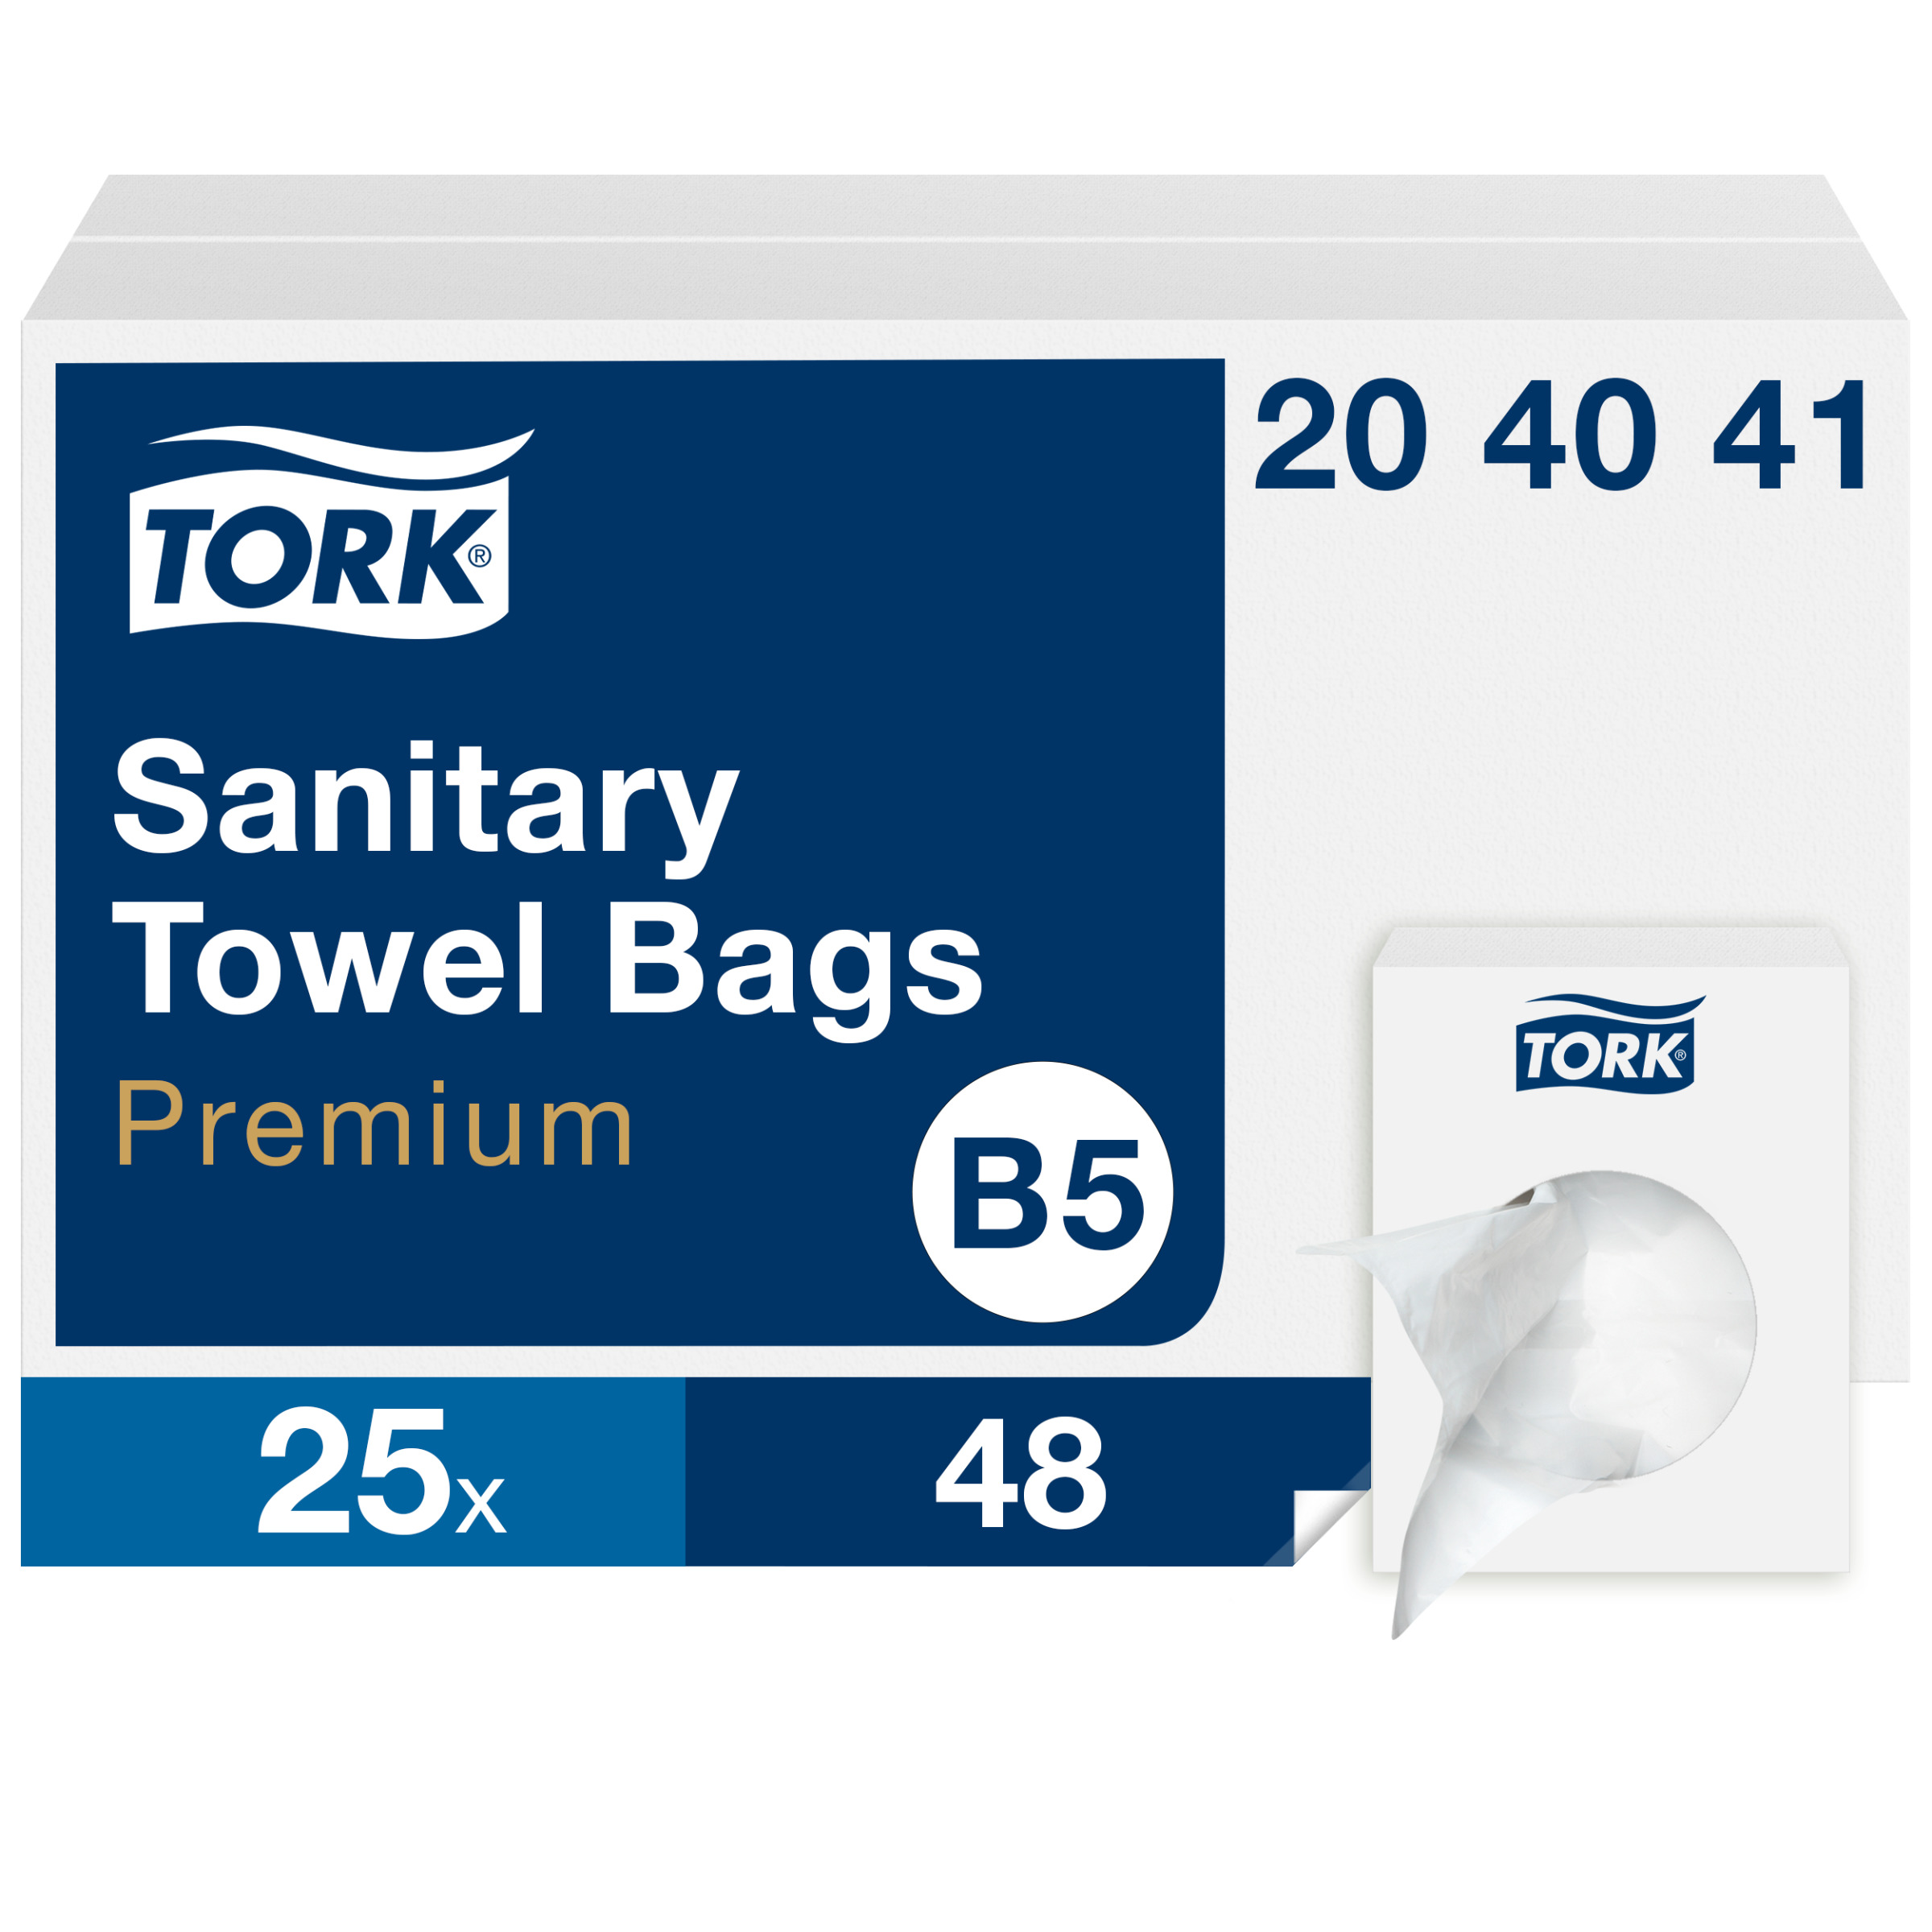 Tork Sanitary Towel Bags - Pack of 25